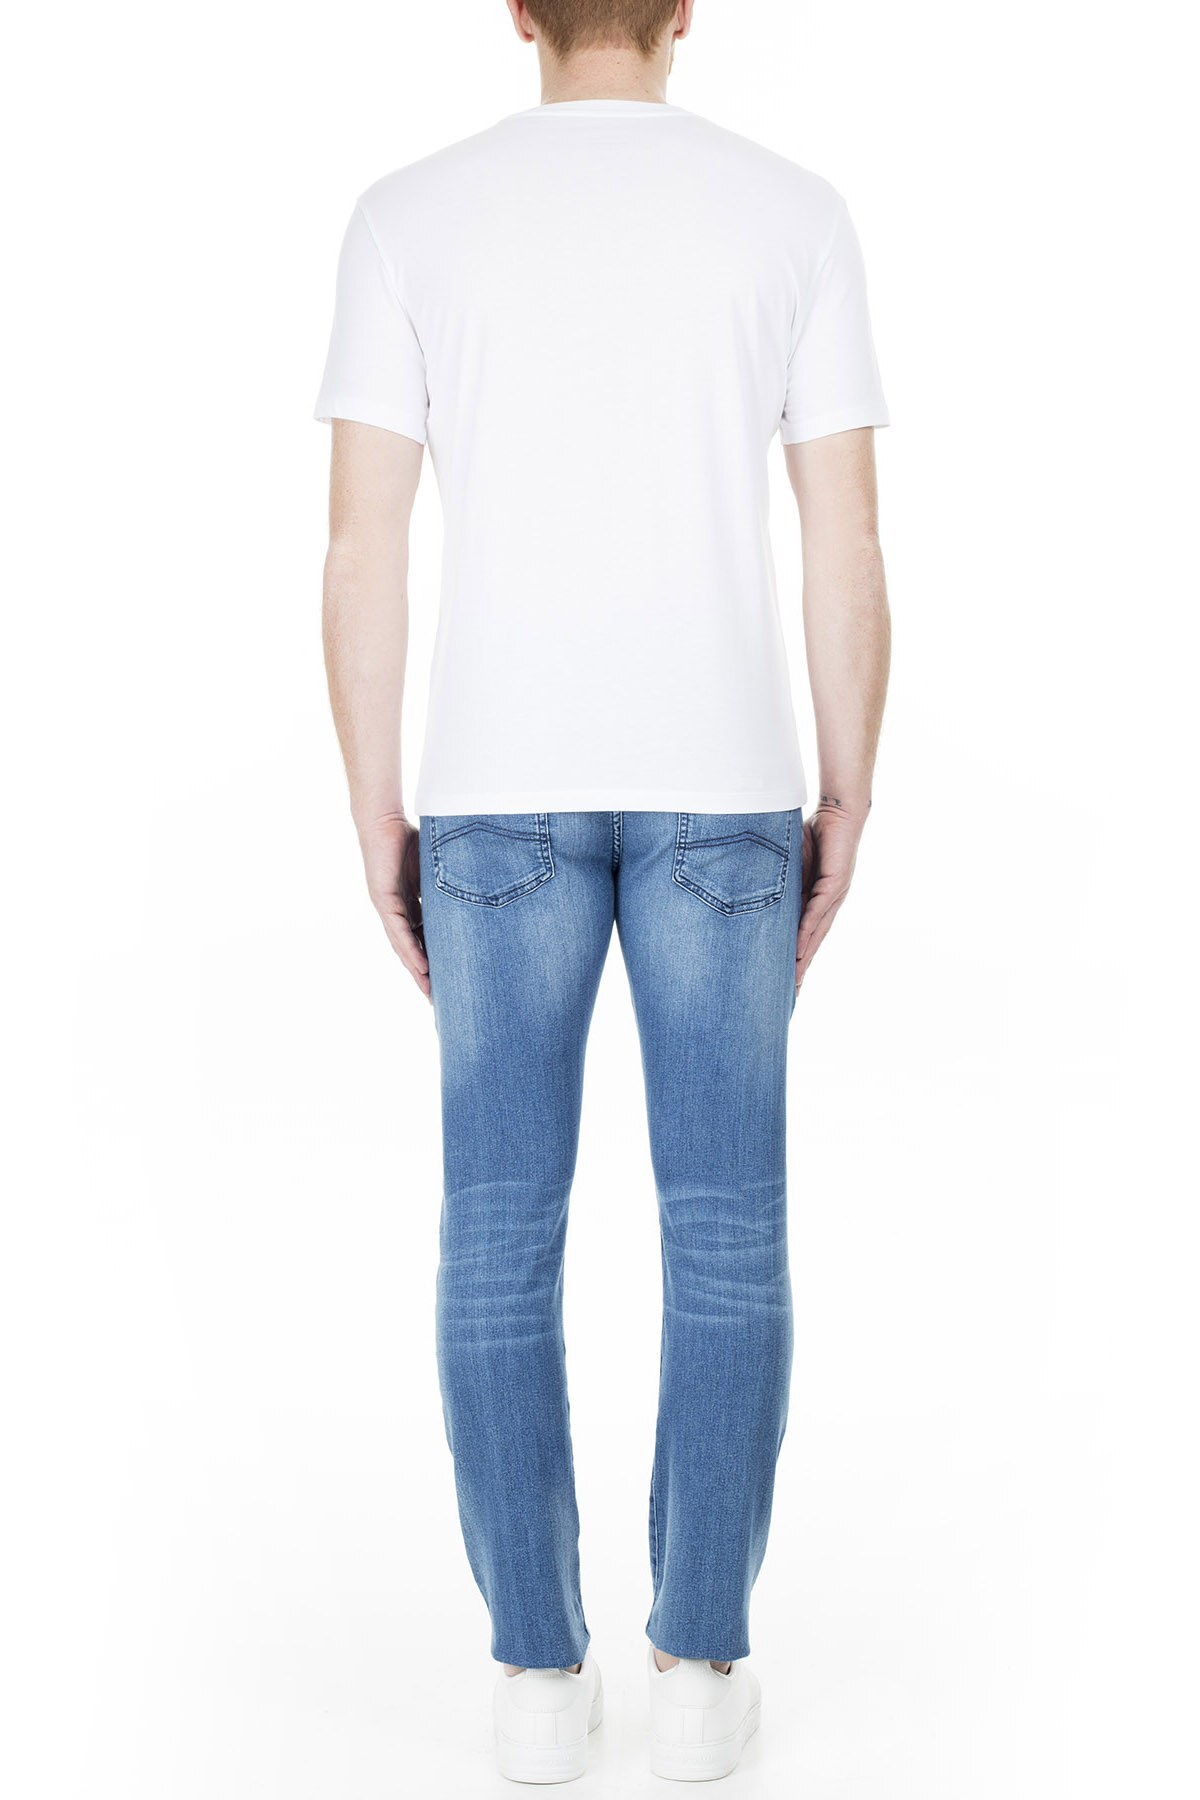 Armani Exchange J13 Jeans Erkek Kot Pantolon 3HZJ13 Z1RXZ 1500 LACİVERT